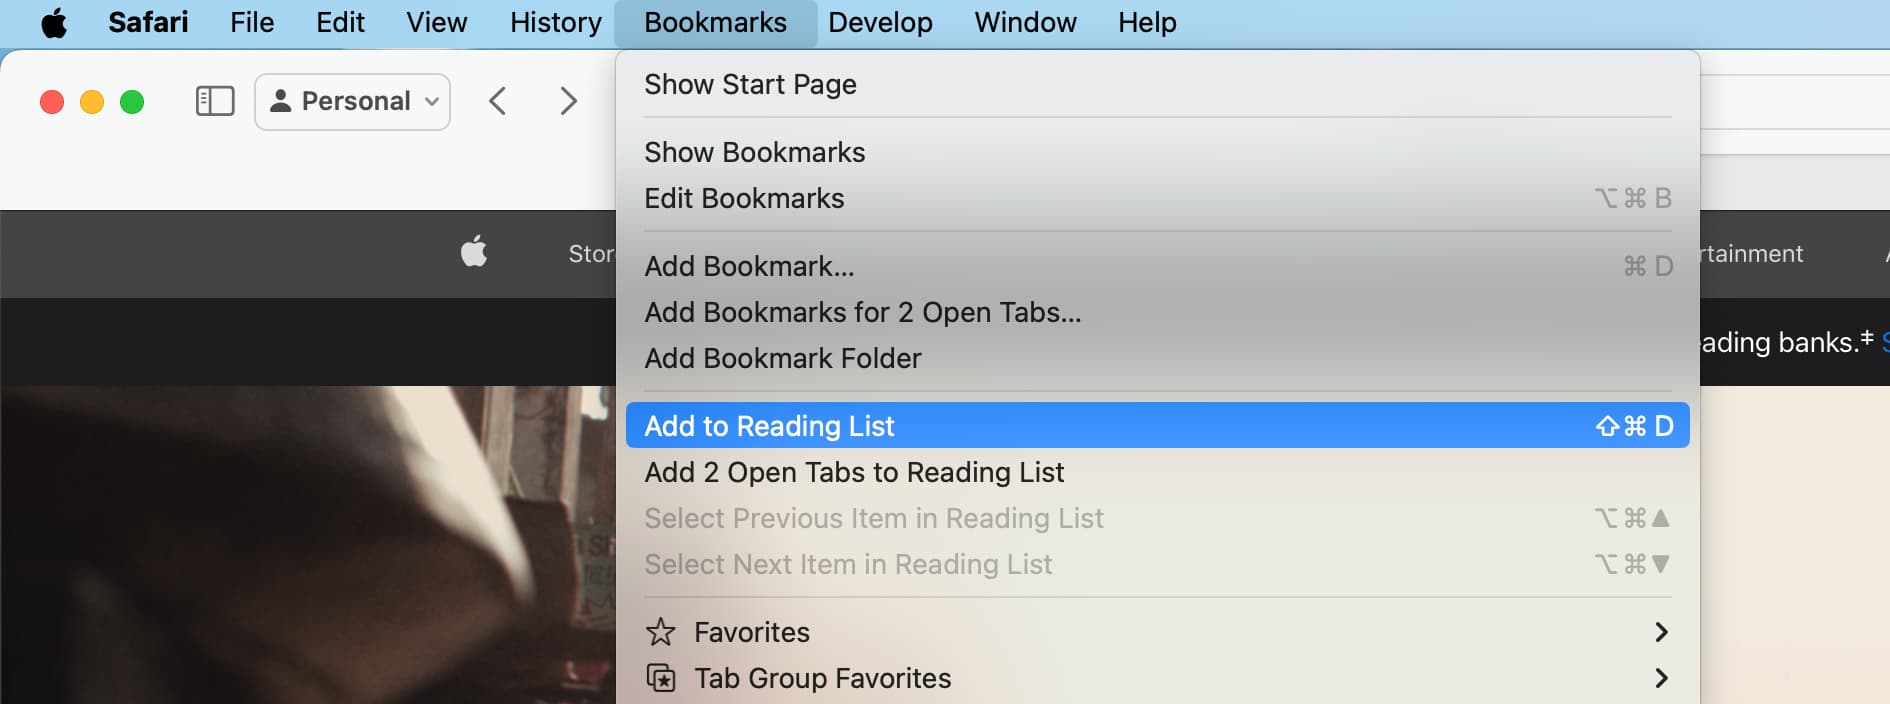 Add to Reading List in Safari on Mac